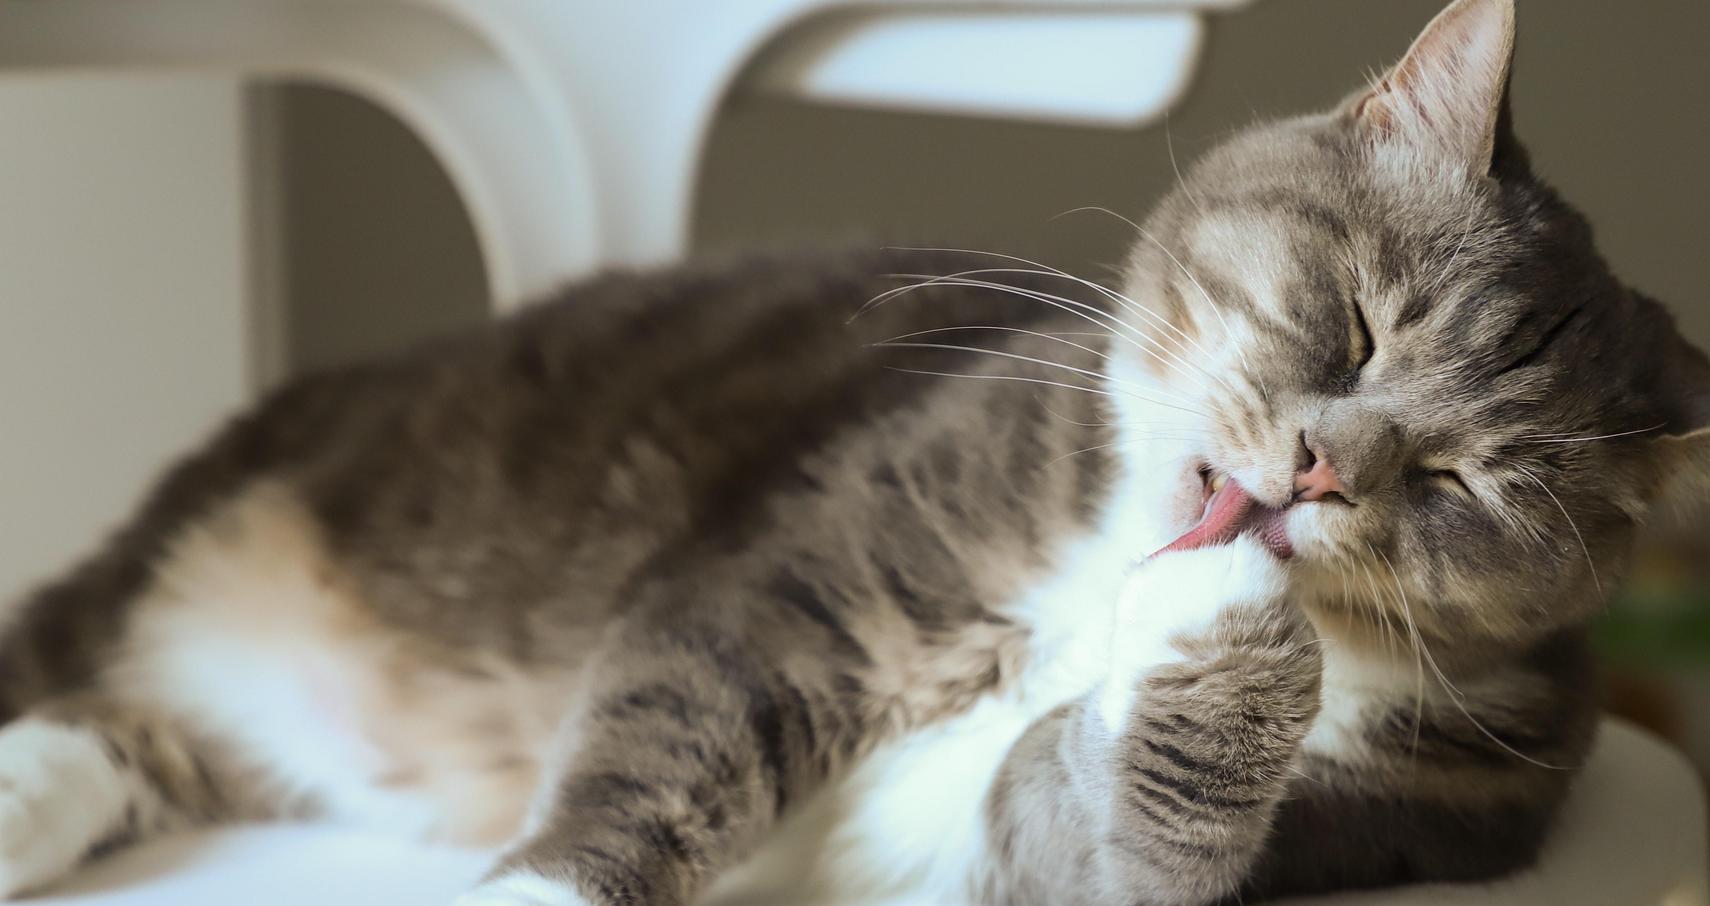 When You Don't Want to Be a Cat: How to Use (and Remove) Meeting Filters